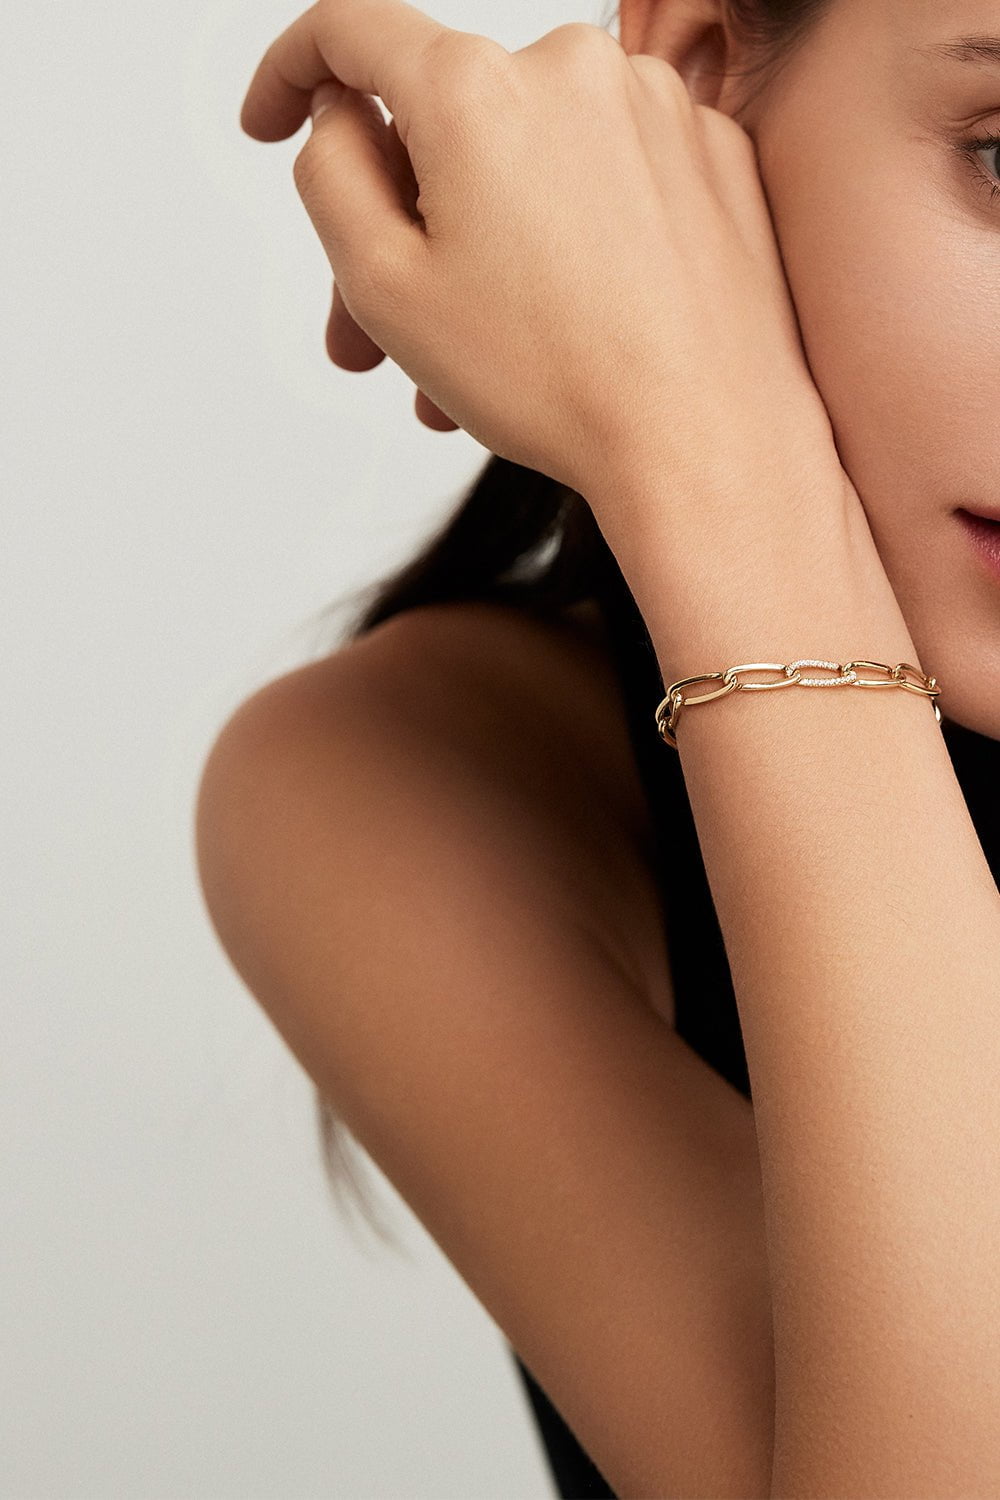 MELISSA KAYE-Small Lulu Diamond Link Bracelet-YELLOW GOLD